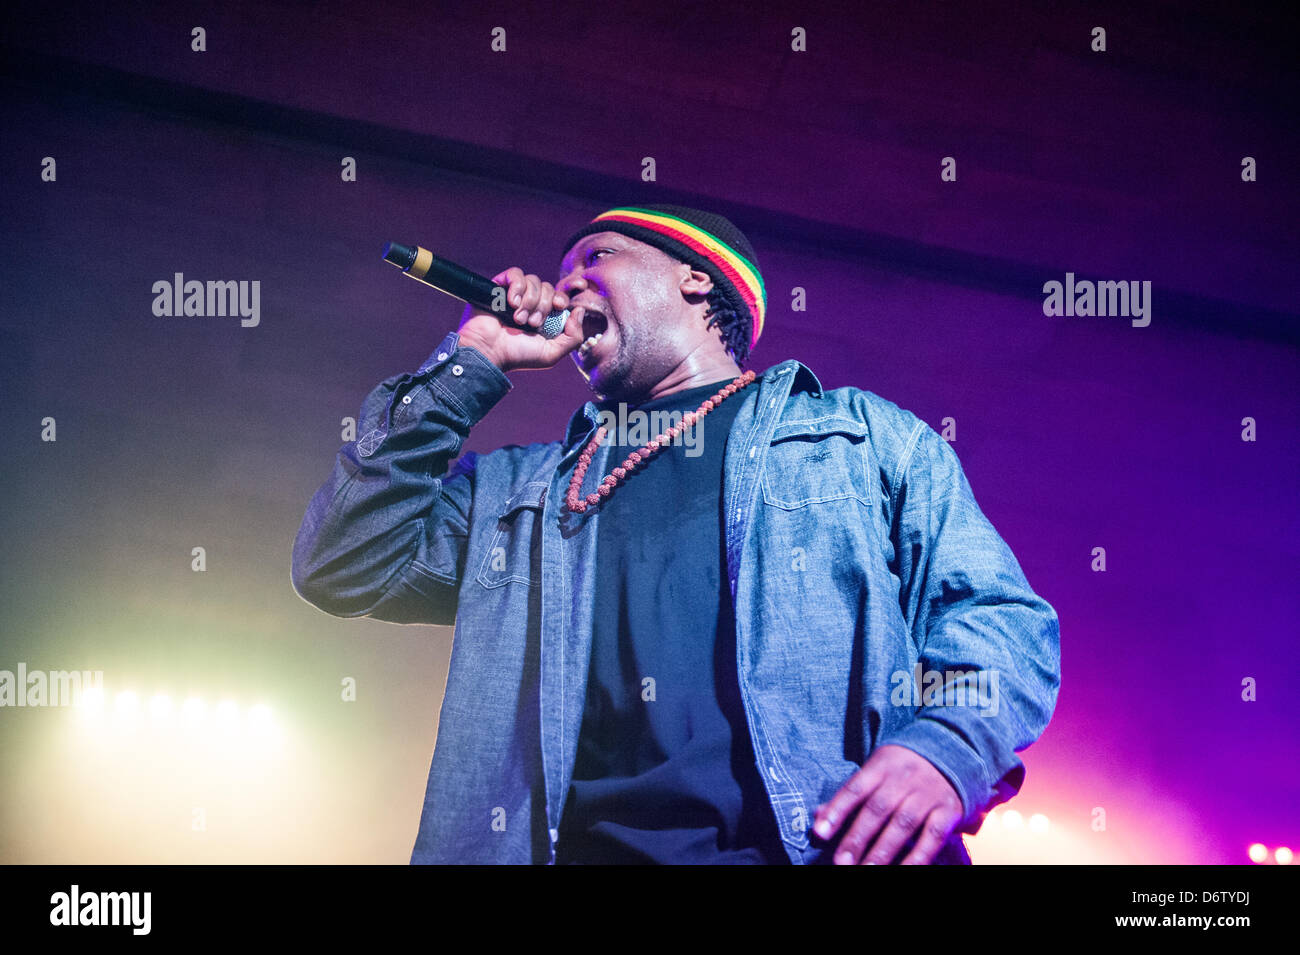 Chicago, USA. 22 avril, 2013. L'artiste hip-hop KRS-ONE d'effectuer dans le sanctuaire à Chicago, Etats-Unis. Crédit : Max Herman/Alamy Live News Banque D'Images